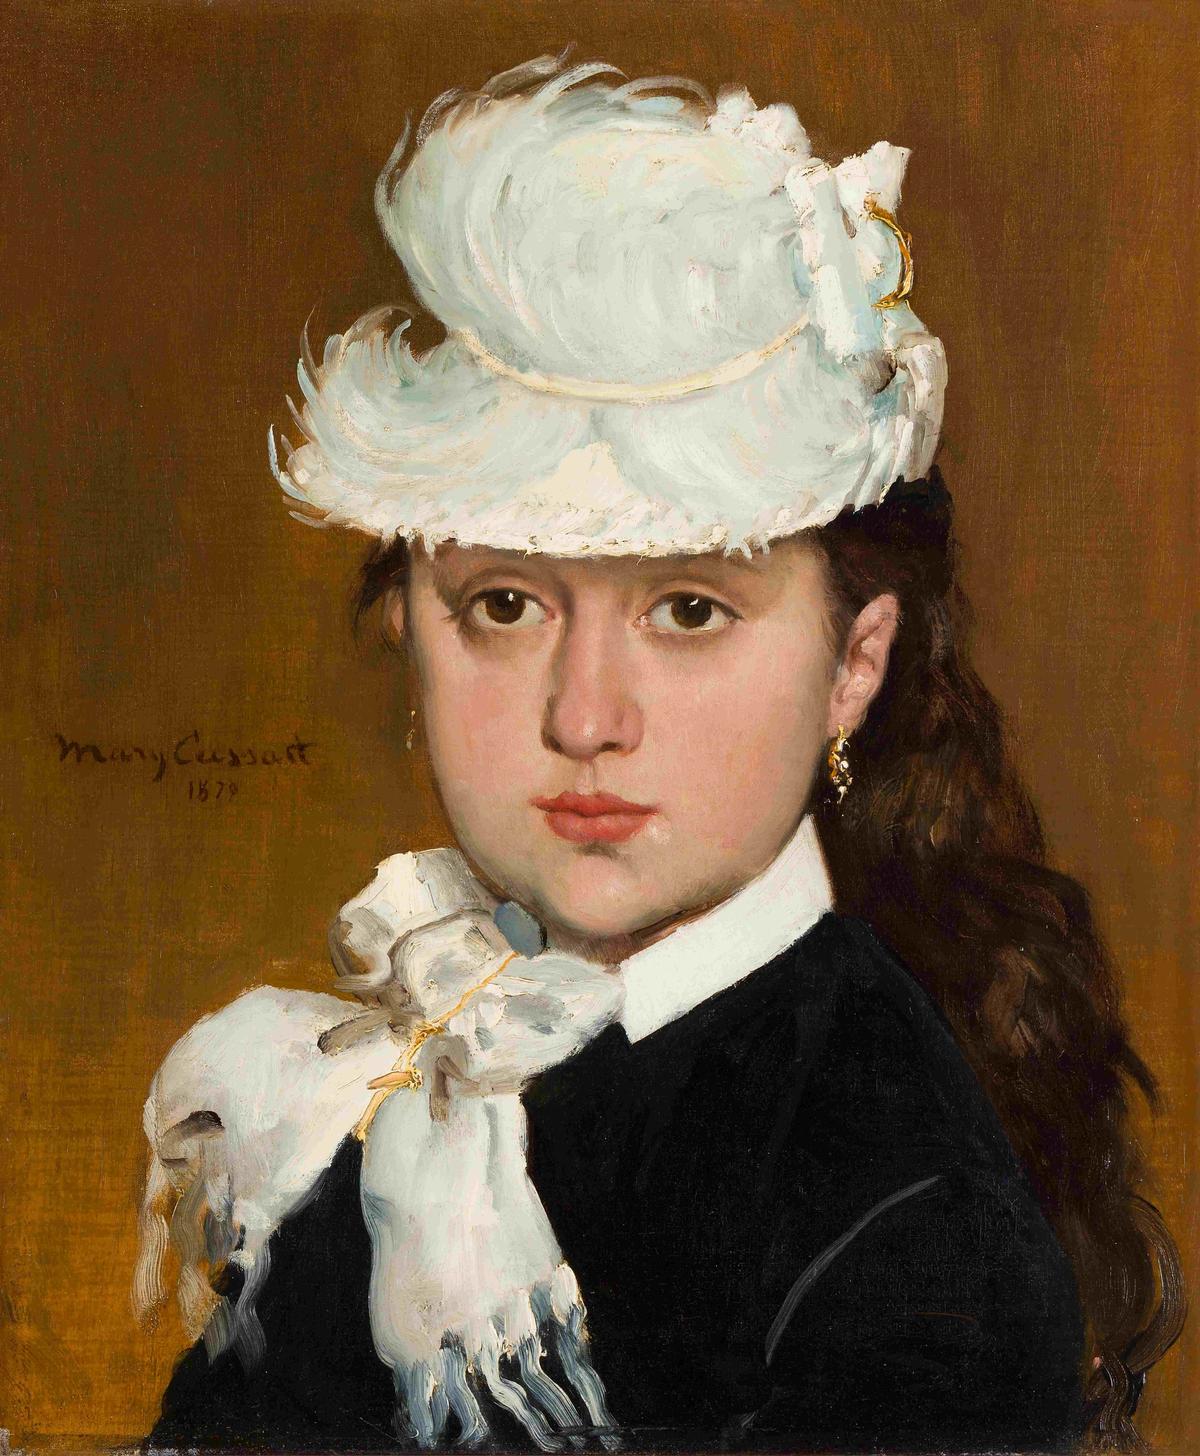 Mary Cassatt, Portrait de jeune fille au chapeau blanc, huile sur toile, 1879. Courtesy Ader